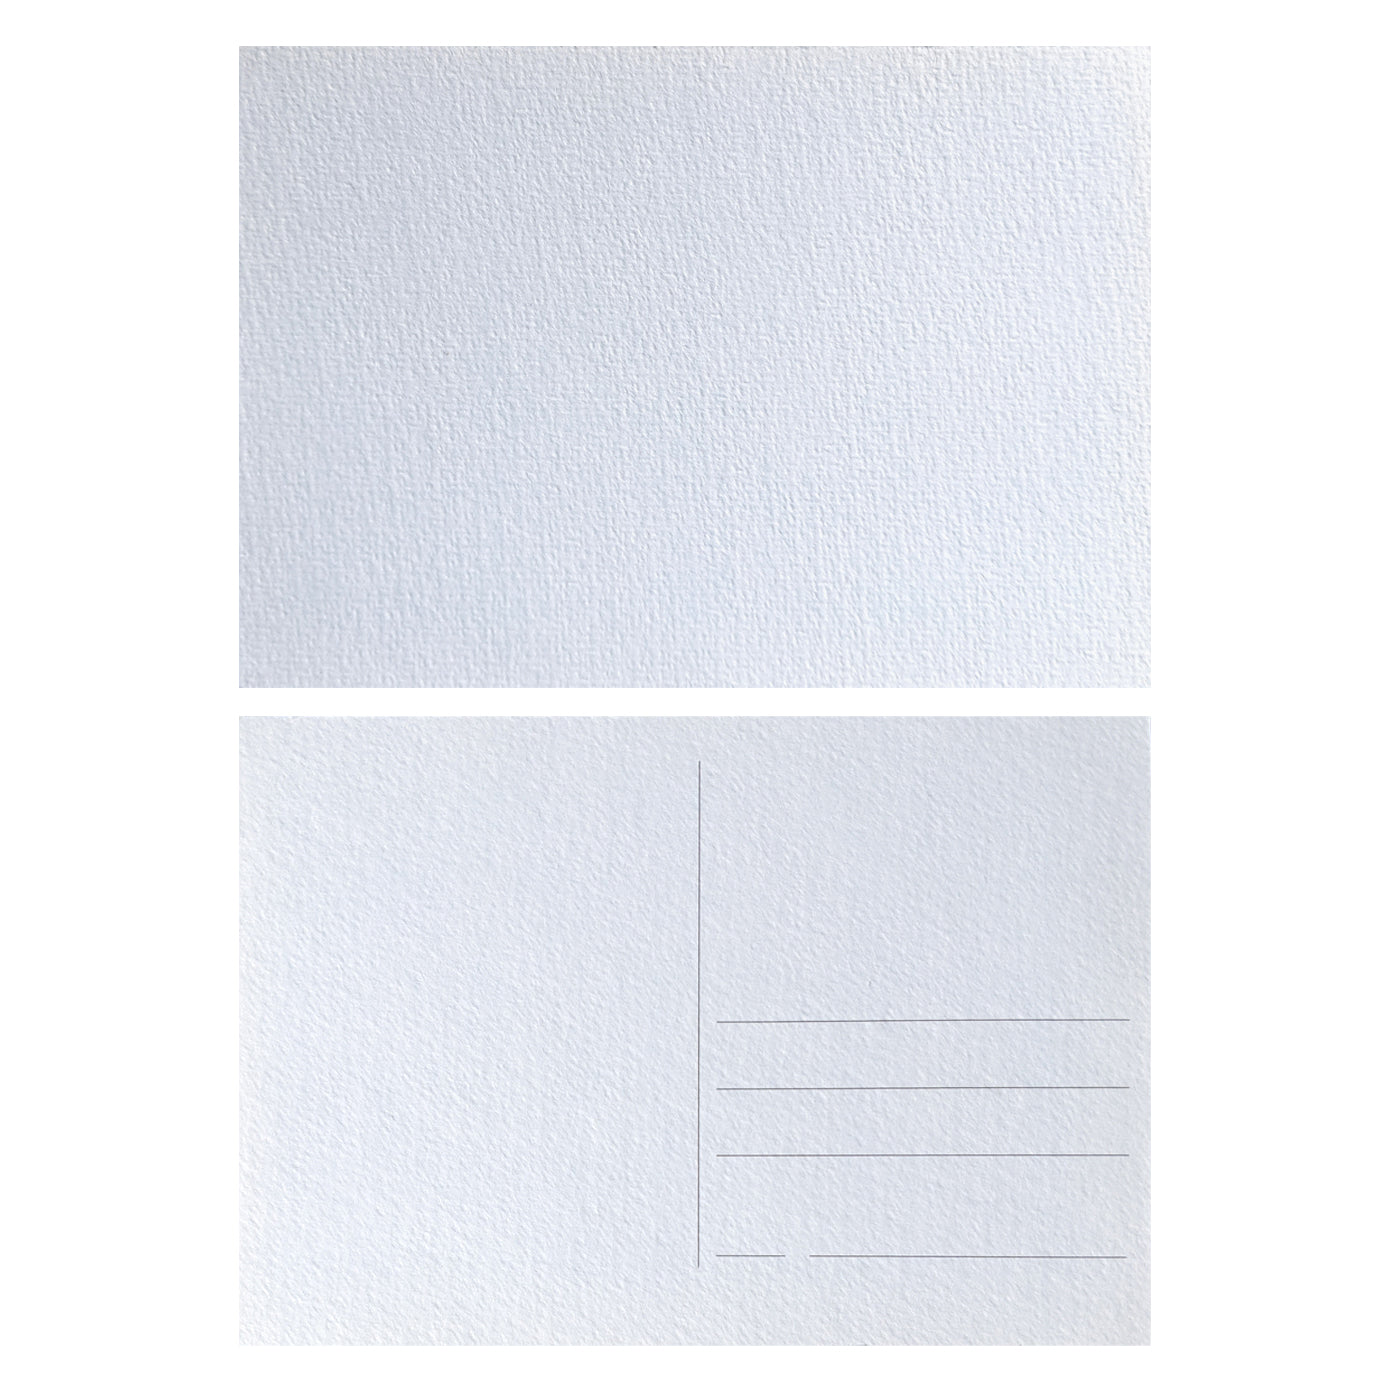 Aquarell-Postkartenblock 300 g/m²